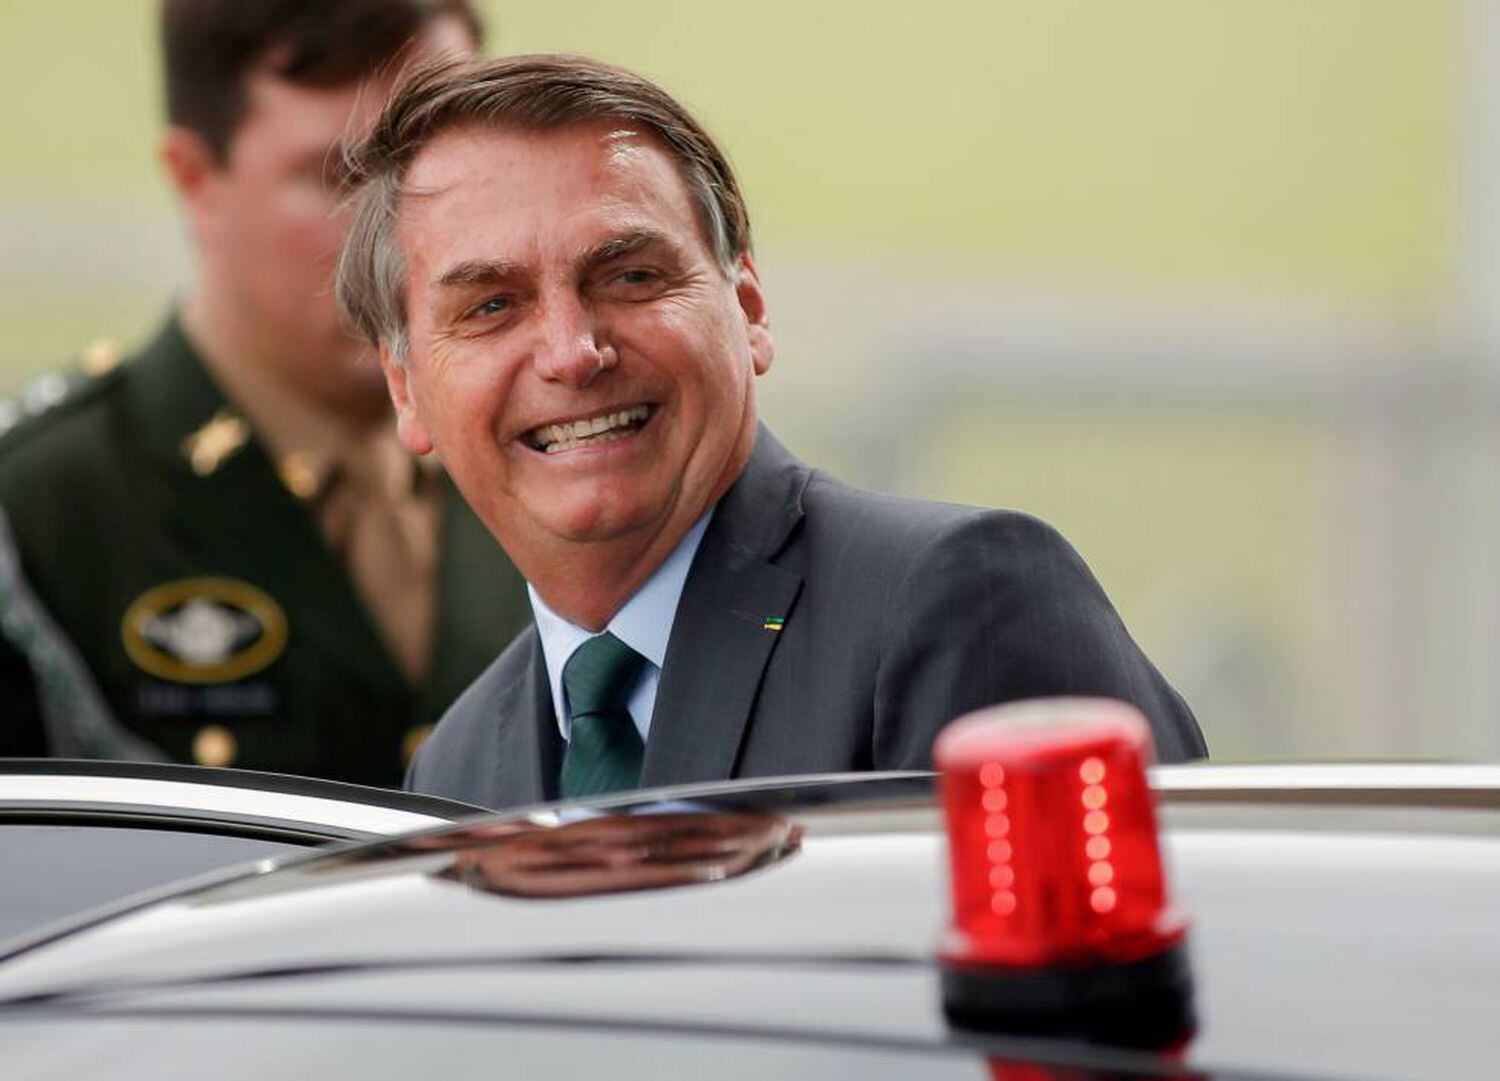 O presidente Bolsonaro na semana passada sai de sua residência em Brasília.